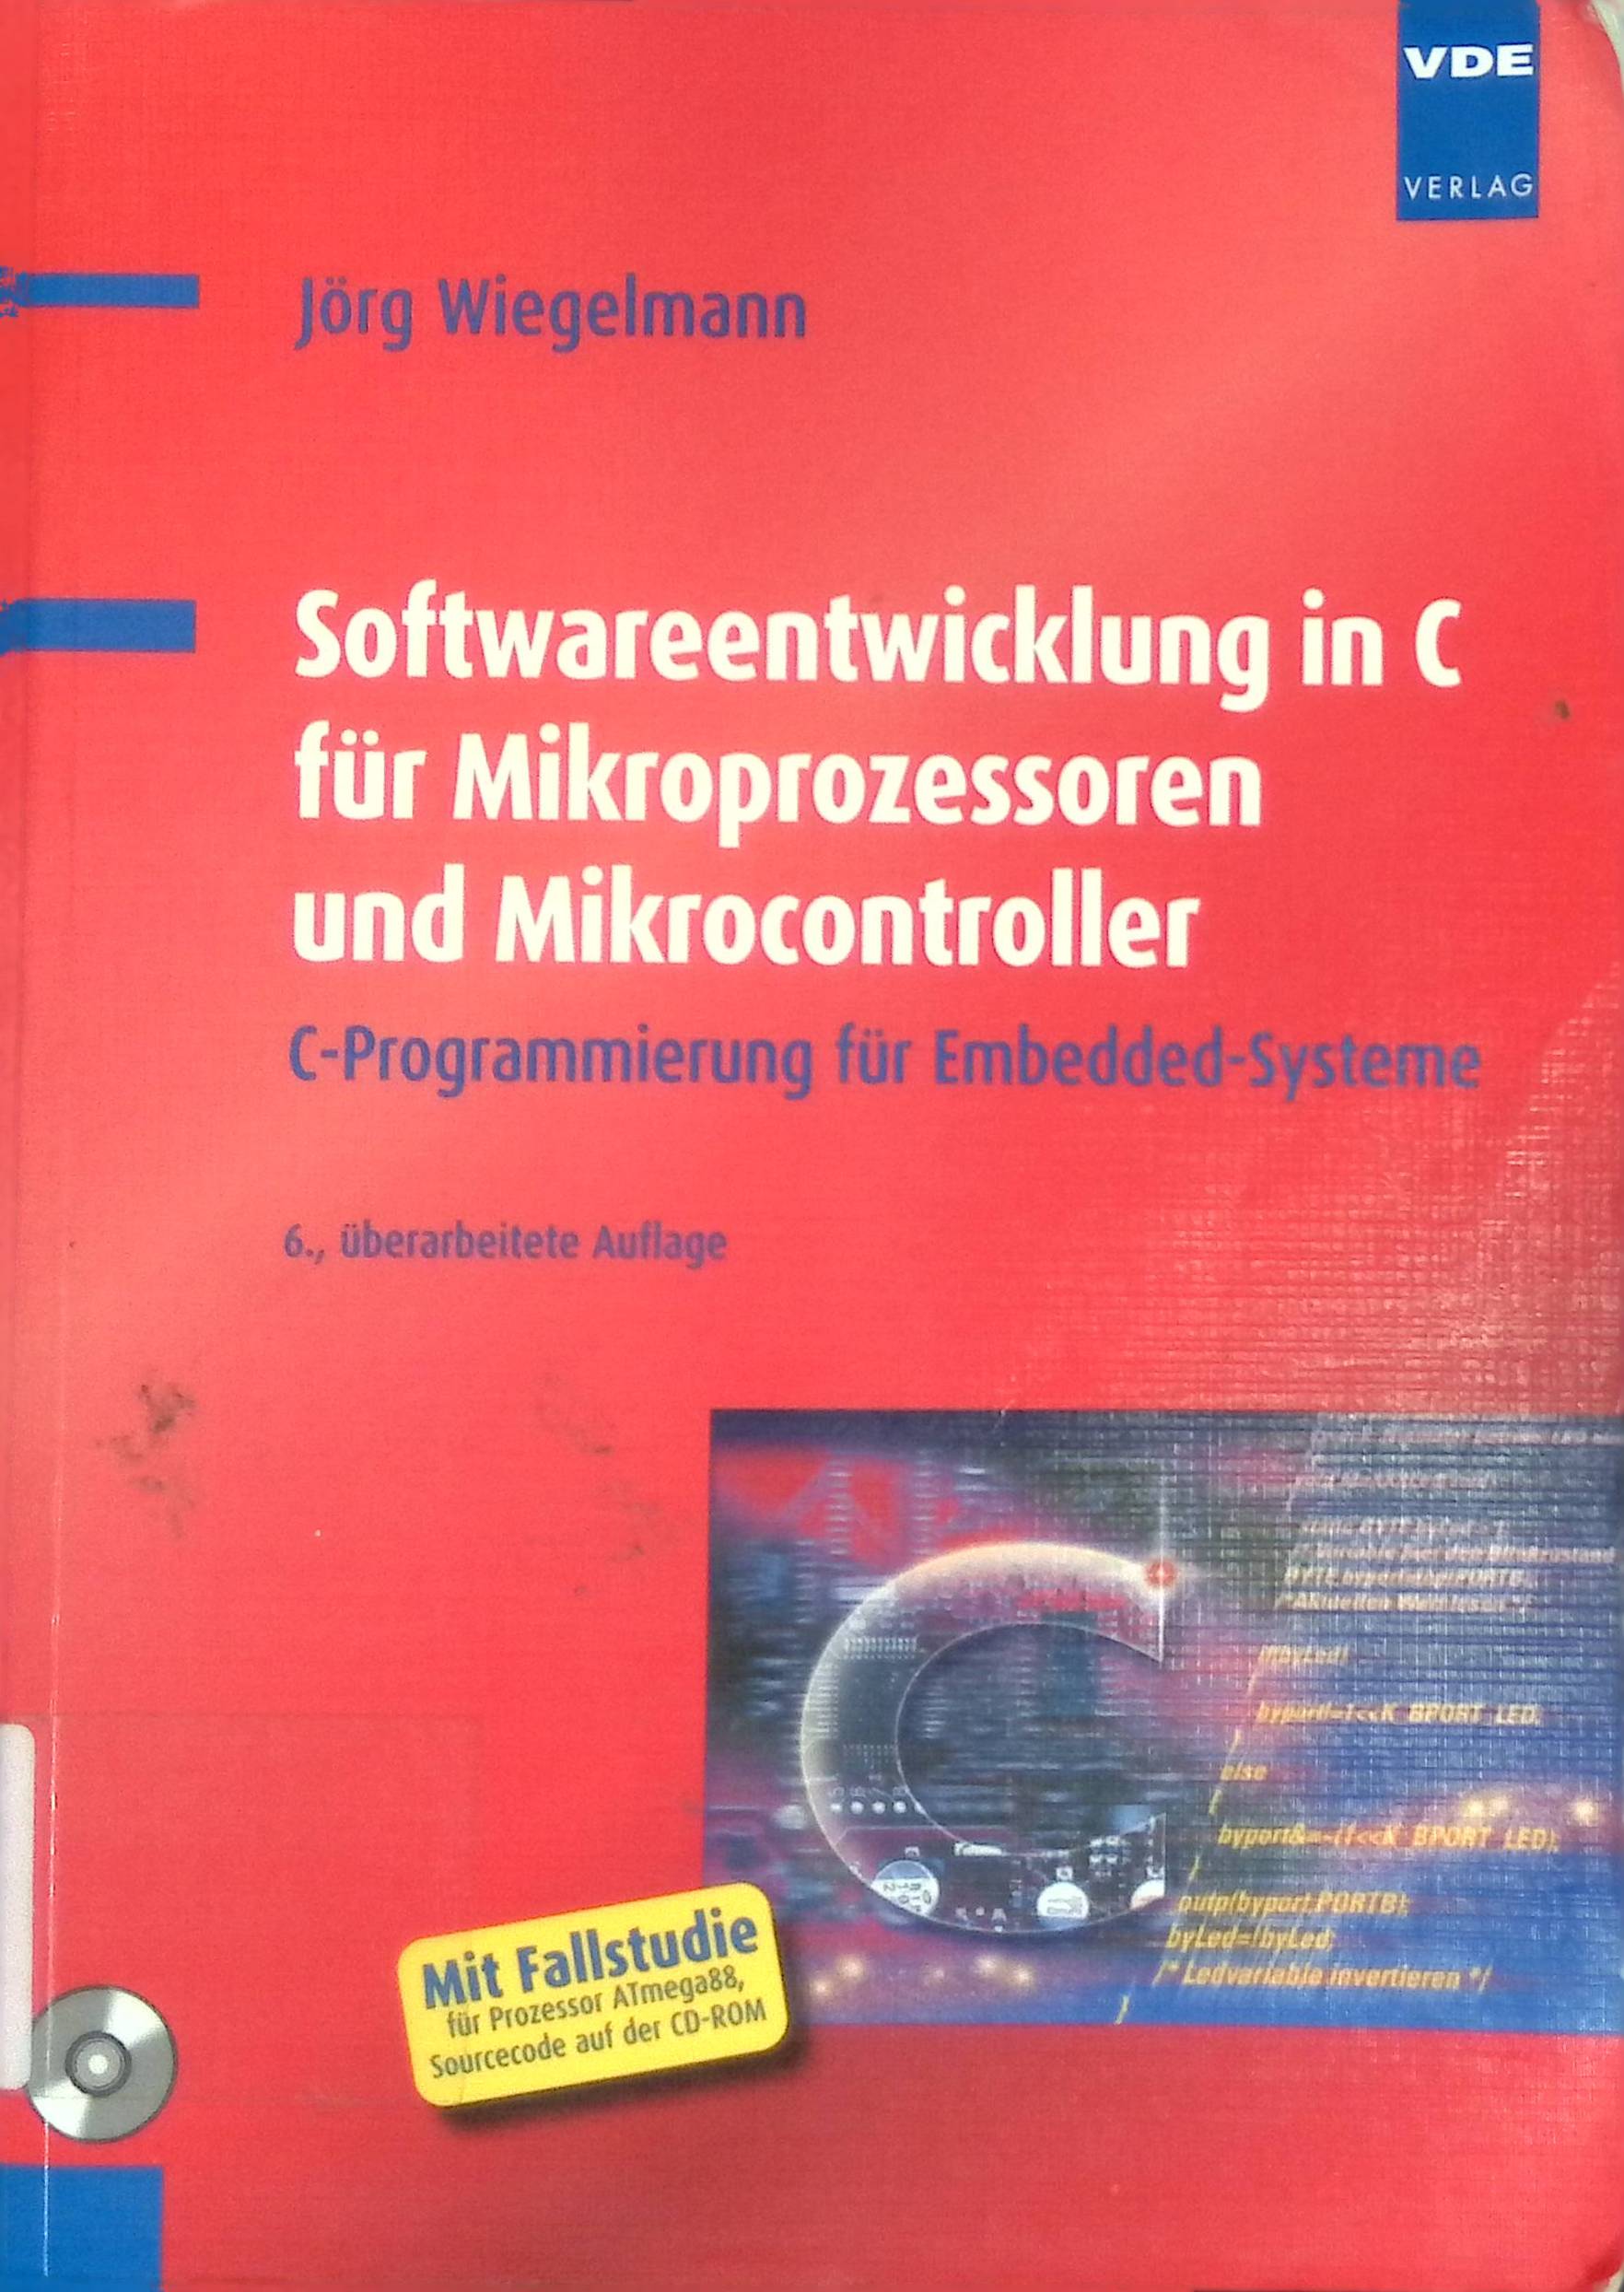 Softwareentwicklung in C für Mikroprozessoren und Mikrocontroller : C-Programmierung für Embedded-Systeme ; [mit Fallstudie für Prozessor ATmega88, Sourcecode auf der CD-ROM]. - Wiegelmann, Jörg